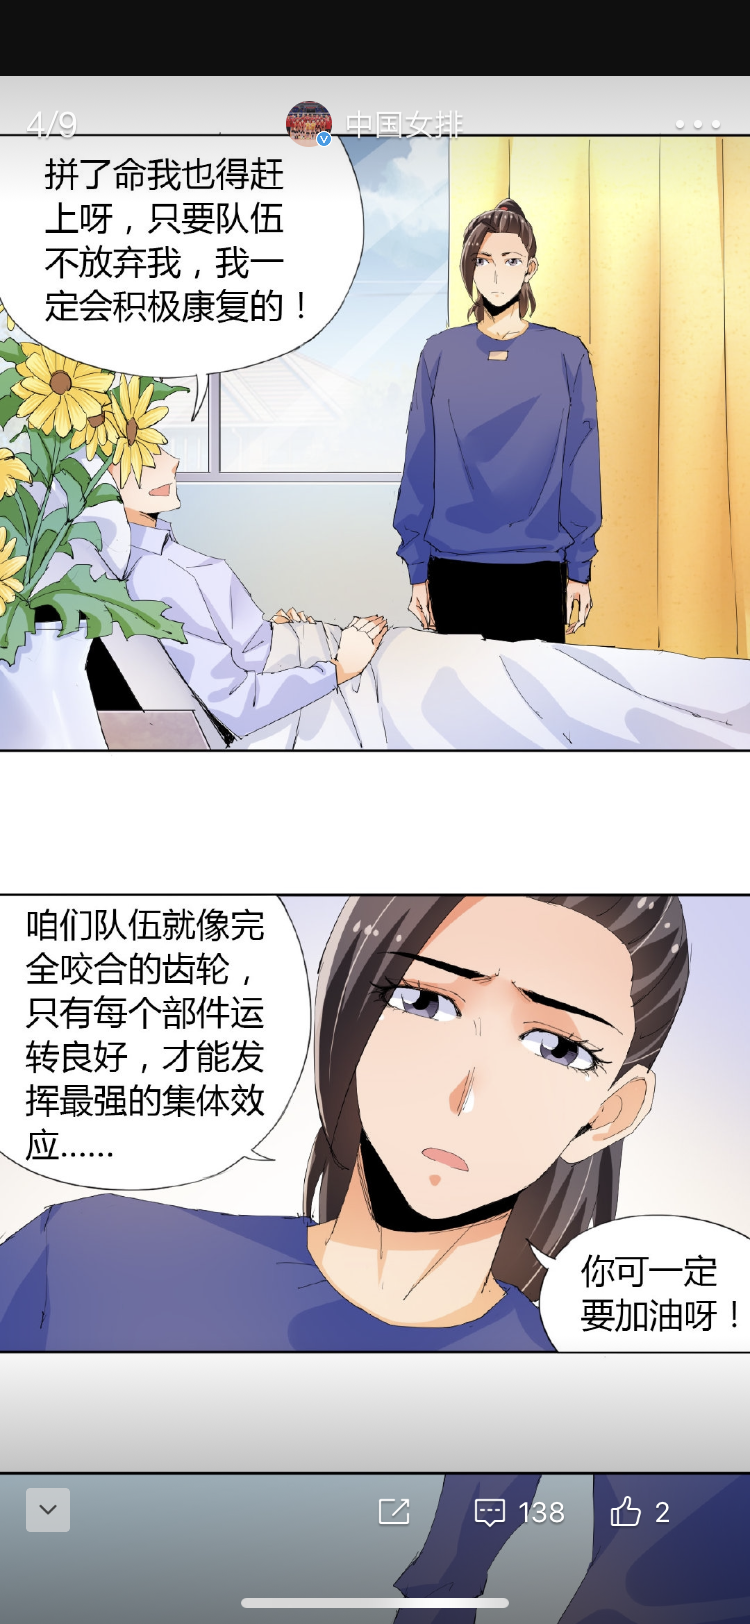 中国女排官方微博发表漫画系列特别关照江苏女排